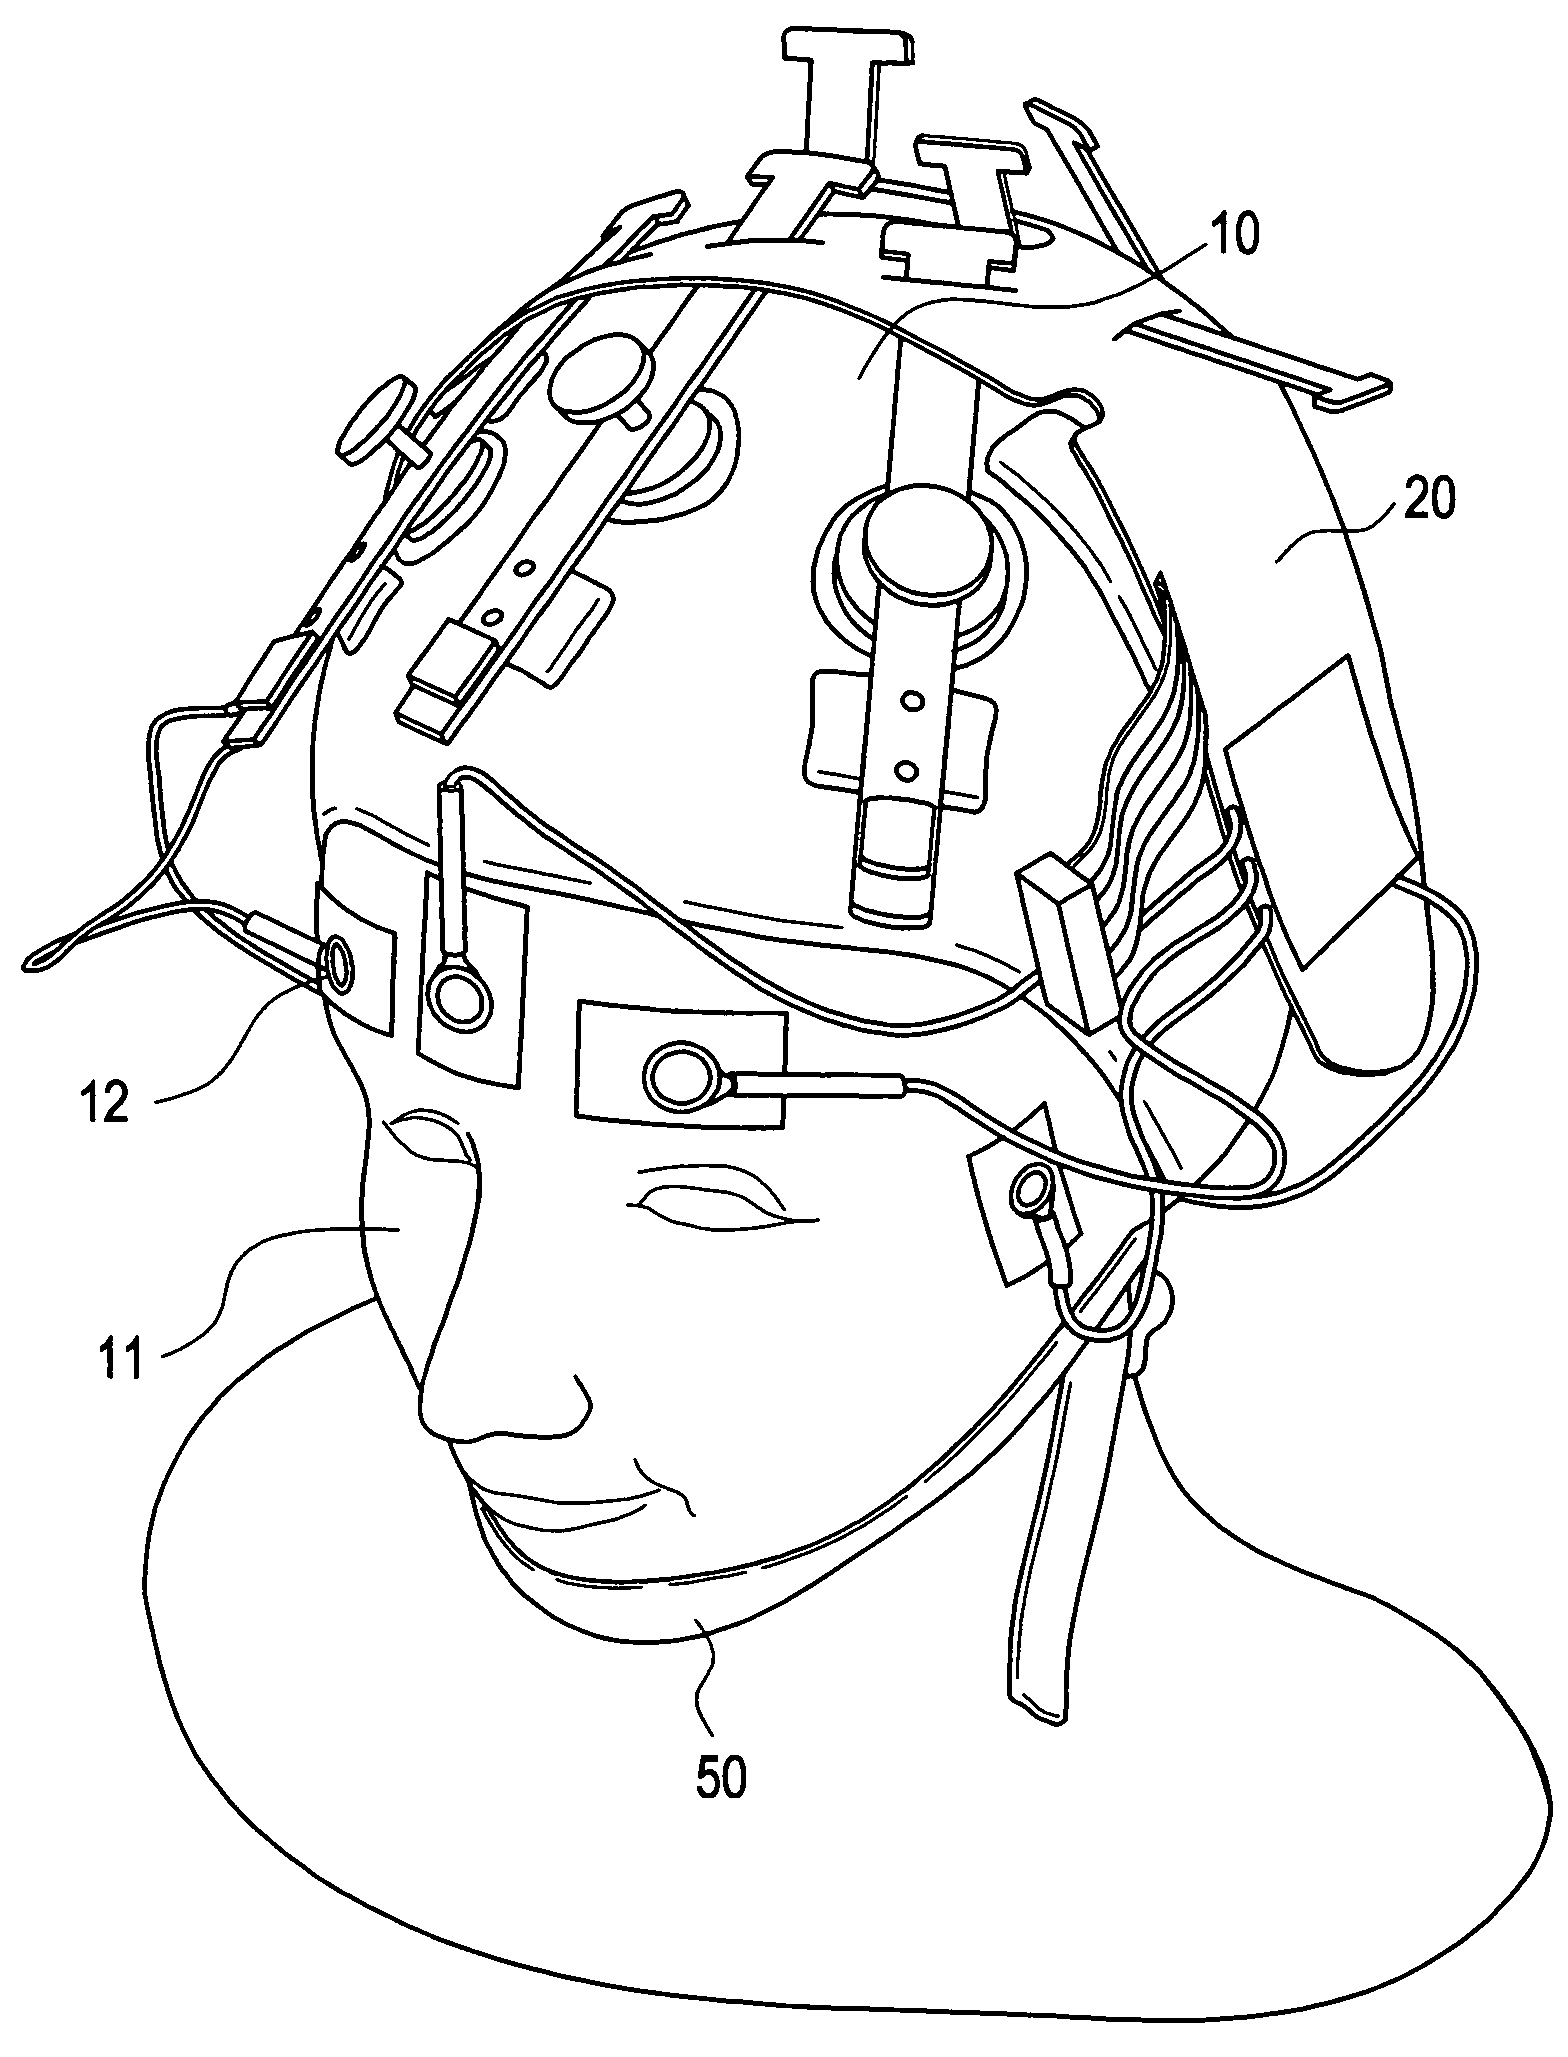 EEG electrode headset